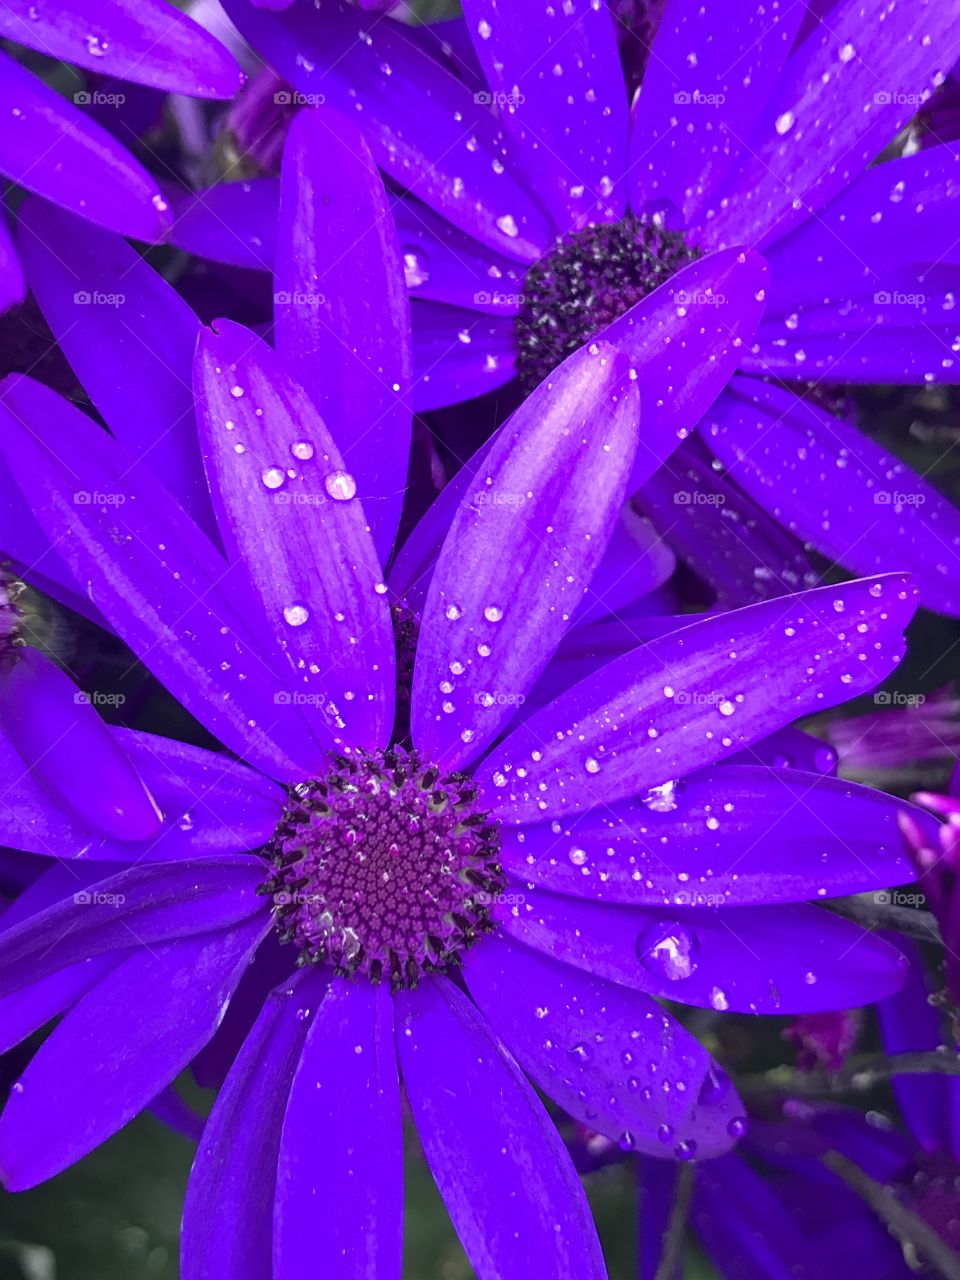 Water droplets on purple flower